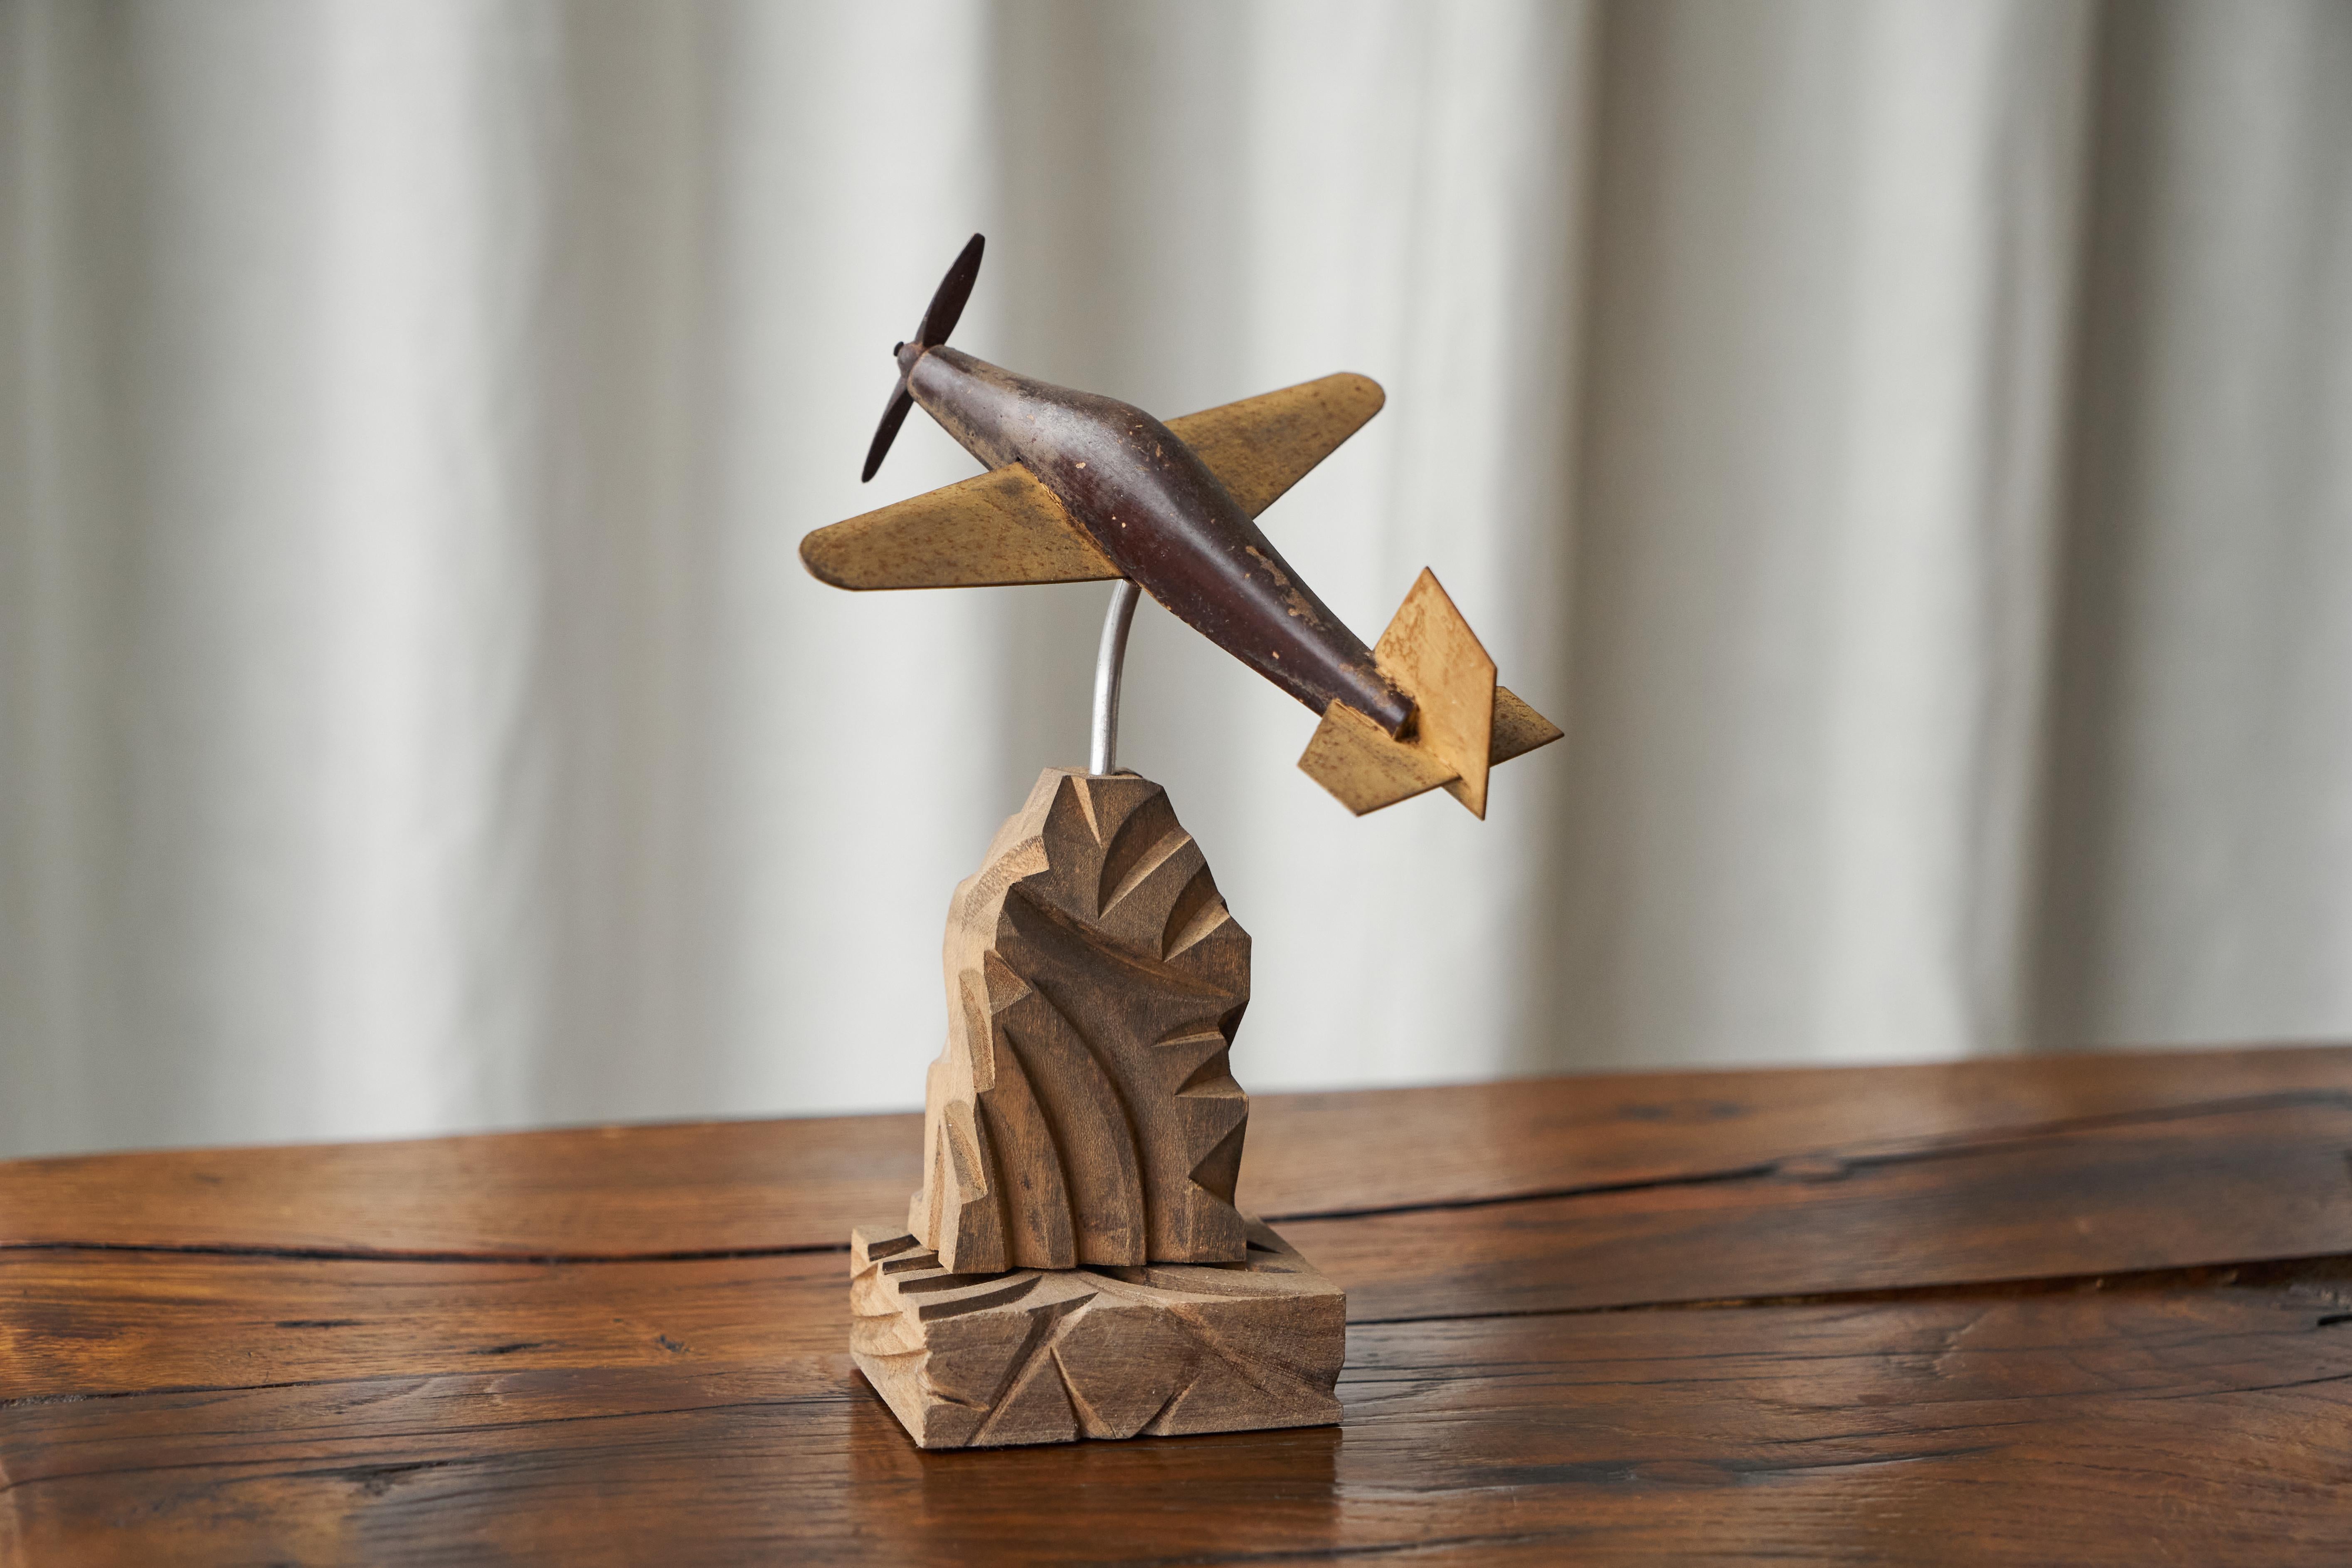 Avion à hélice Art Déco en bois sculpté et métal

Parfois, on trouve une pièce qui convient parfaitement.... Cet avion à hélice Art déco est un merveilleux exemple d'objet amusant et esthétique. Bien réalisé en bois et en métal, il est placé dans